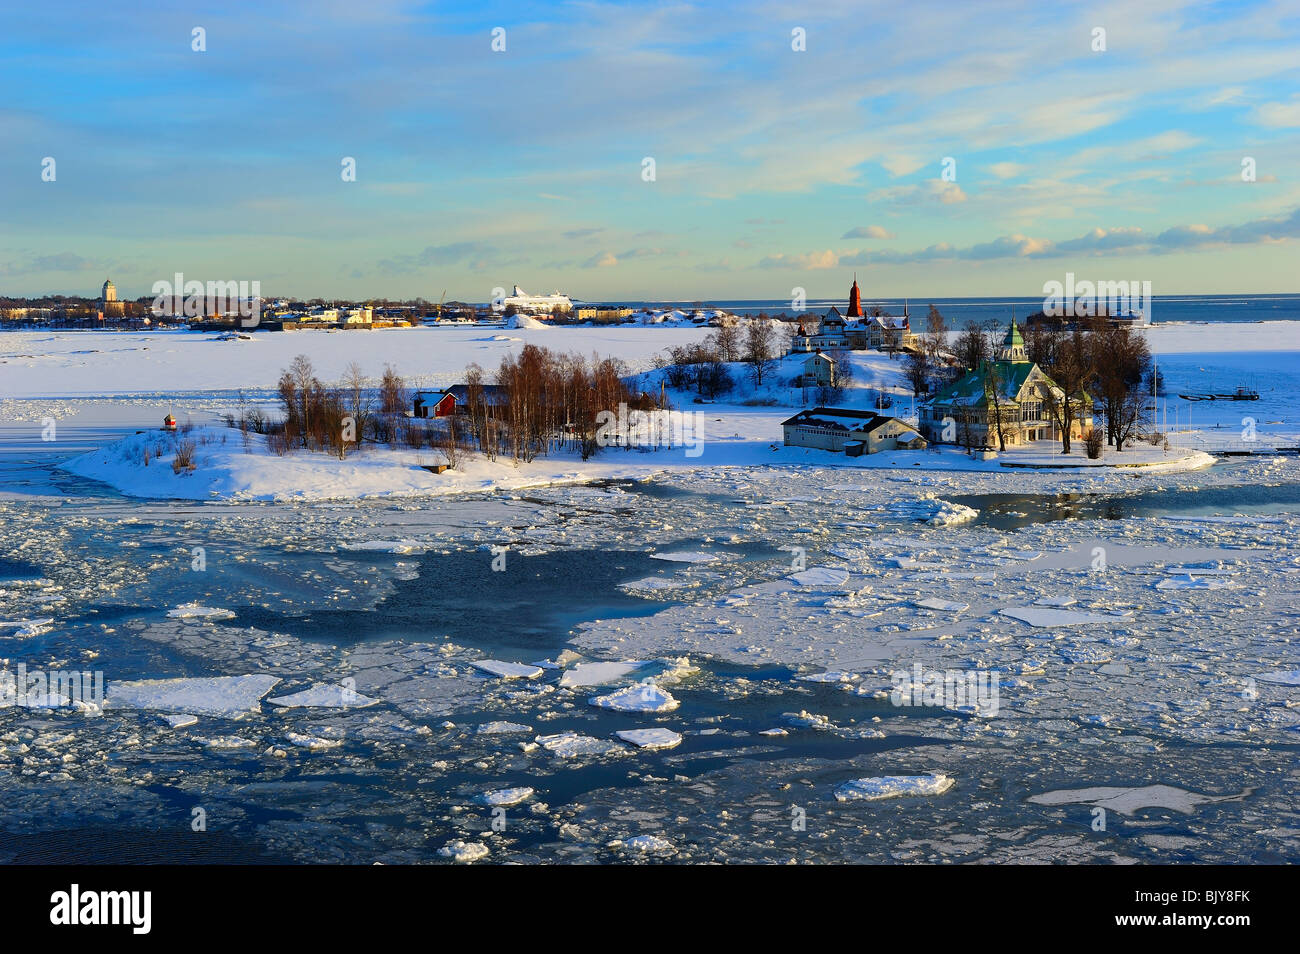 Icy Baltic sea at Katajanokka Helsinki, with Finnish houses on Valkosaari and Luoto islands Stock Photo